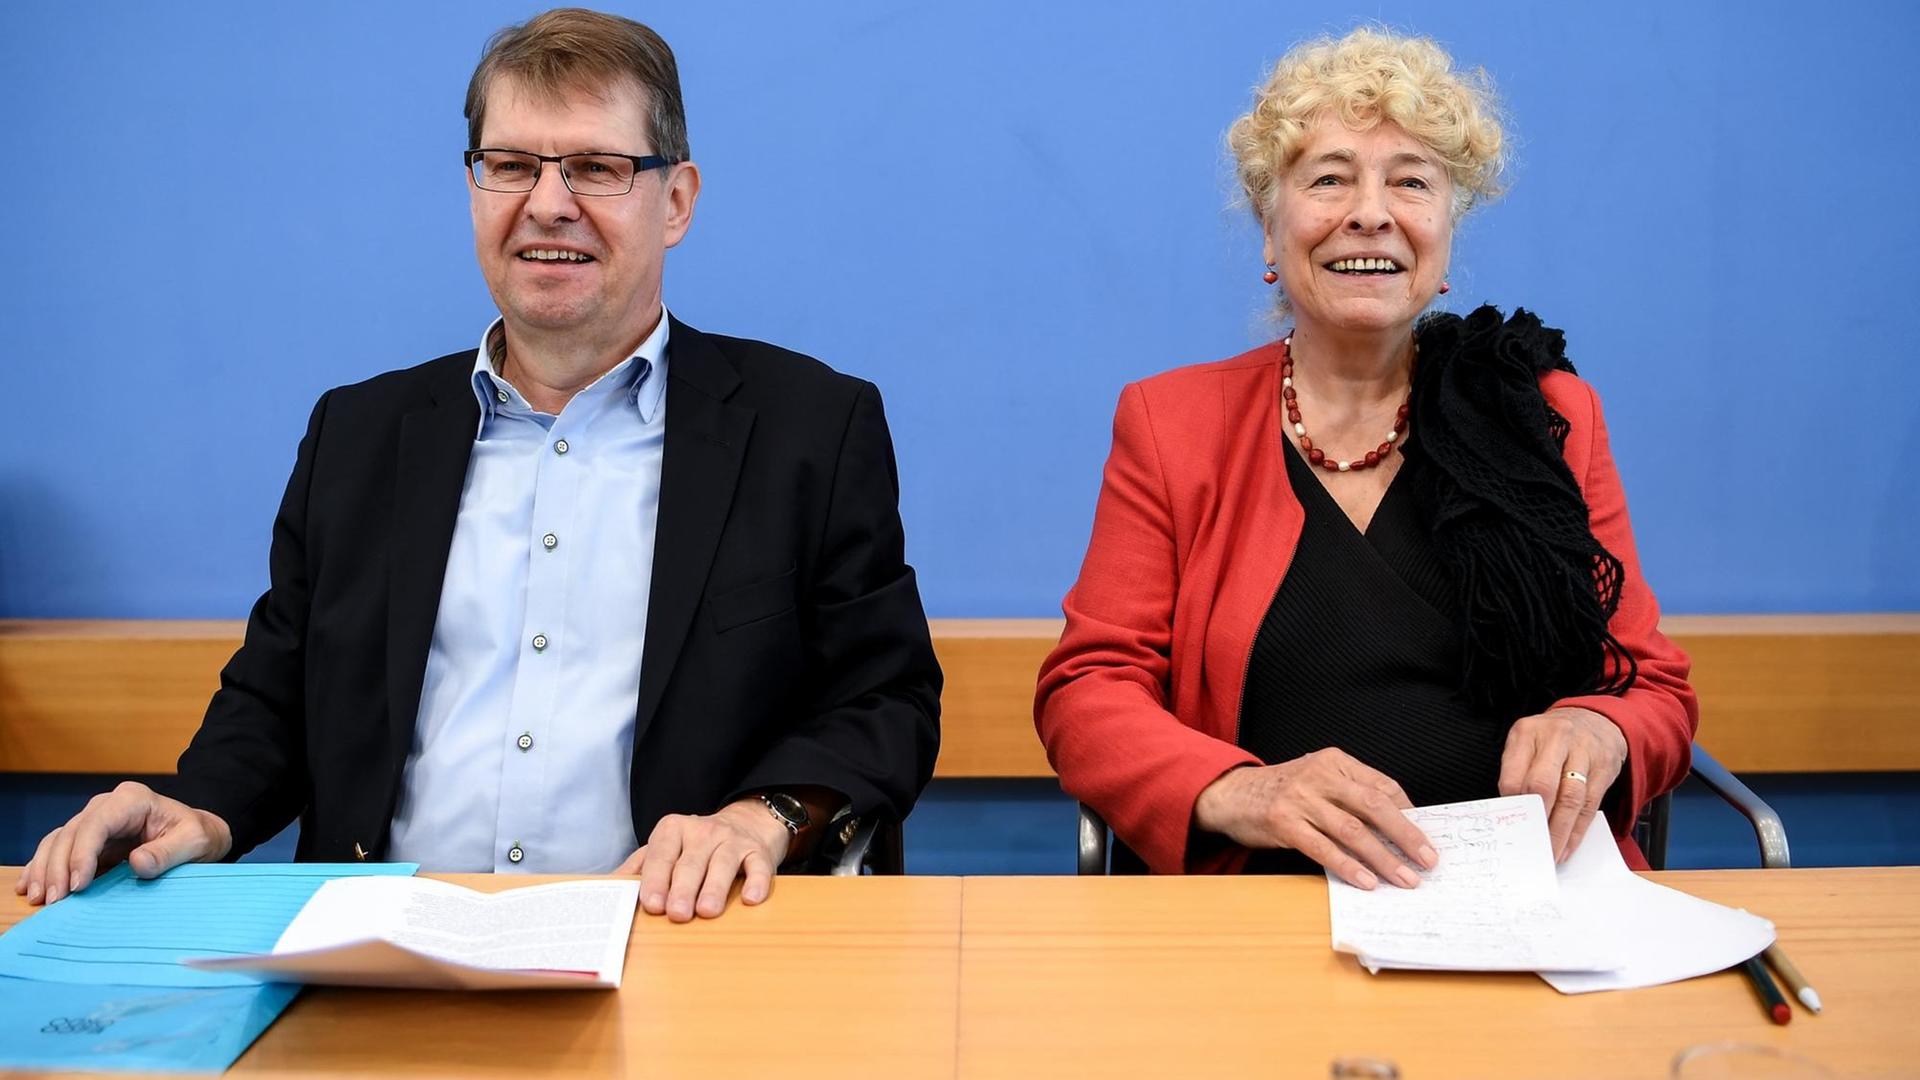 Berlin: Die Politikwissenschaftlerin Gesine Schwan (SPD) und Ralf Stegner, Vorsitzender der SPD-Fraktion im Landtag Schleswig-Holstein, geben zusammen eine Pressekonferenz zu ihrer Kandidatur für den SPD-Vorsitz.